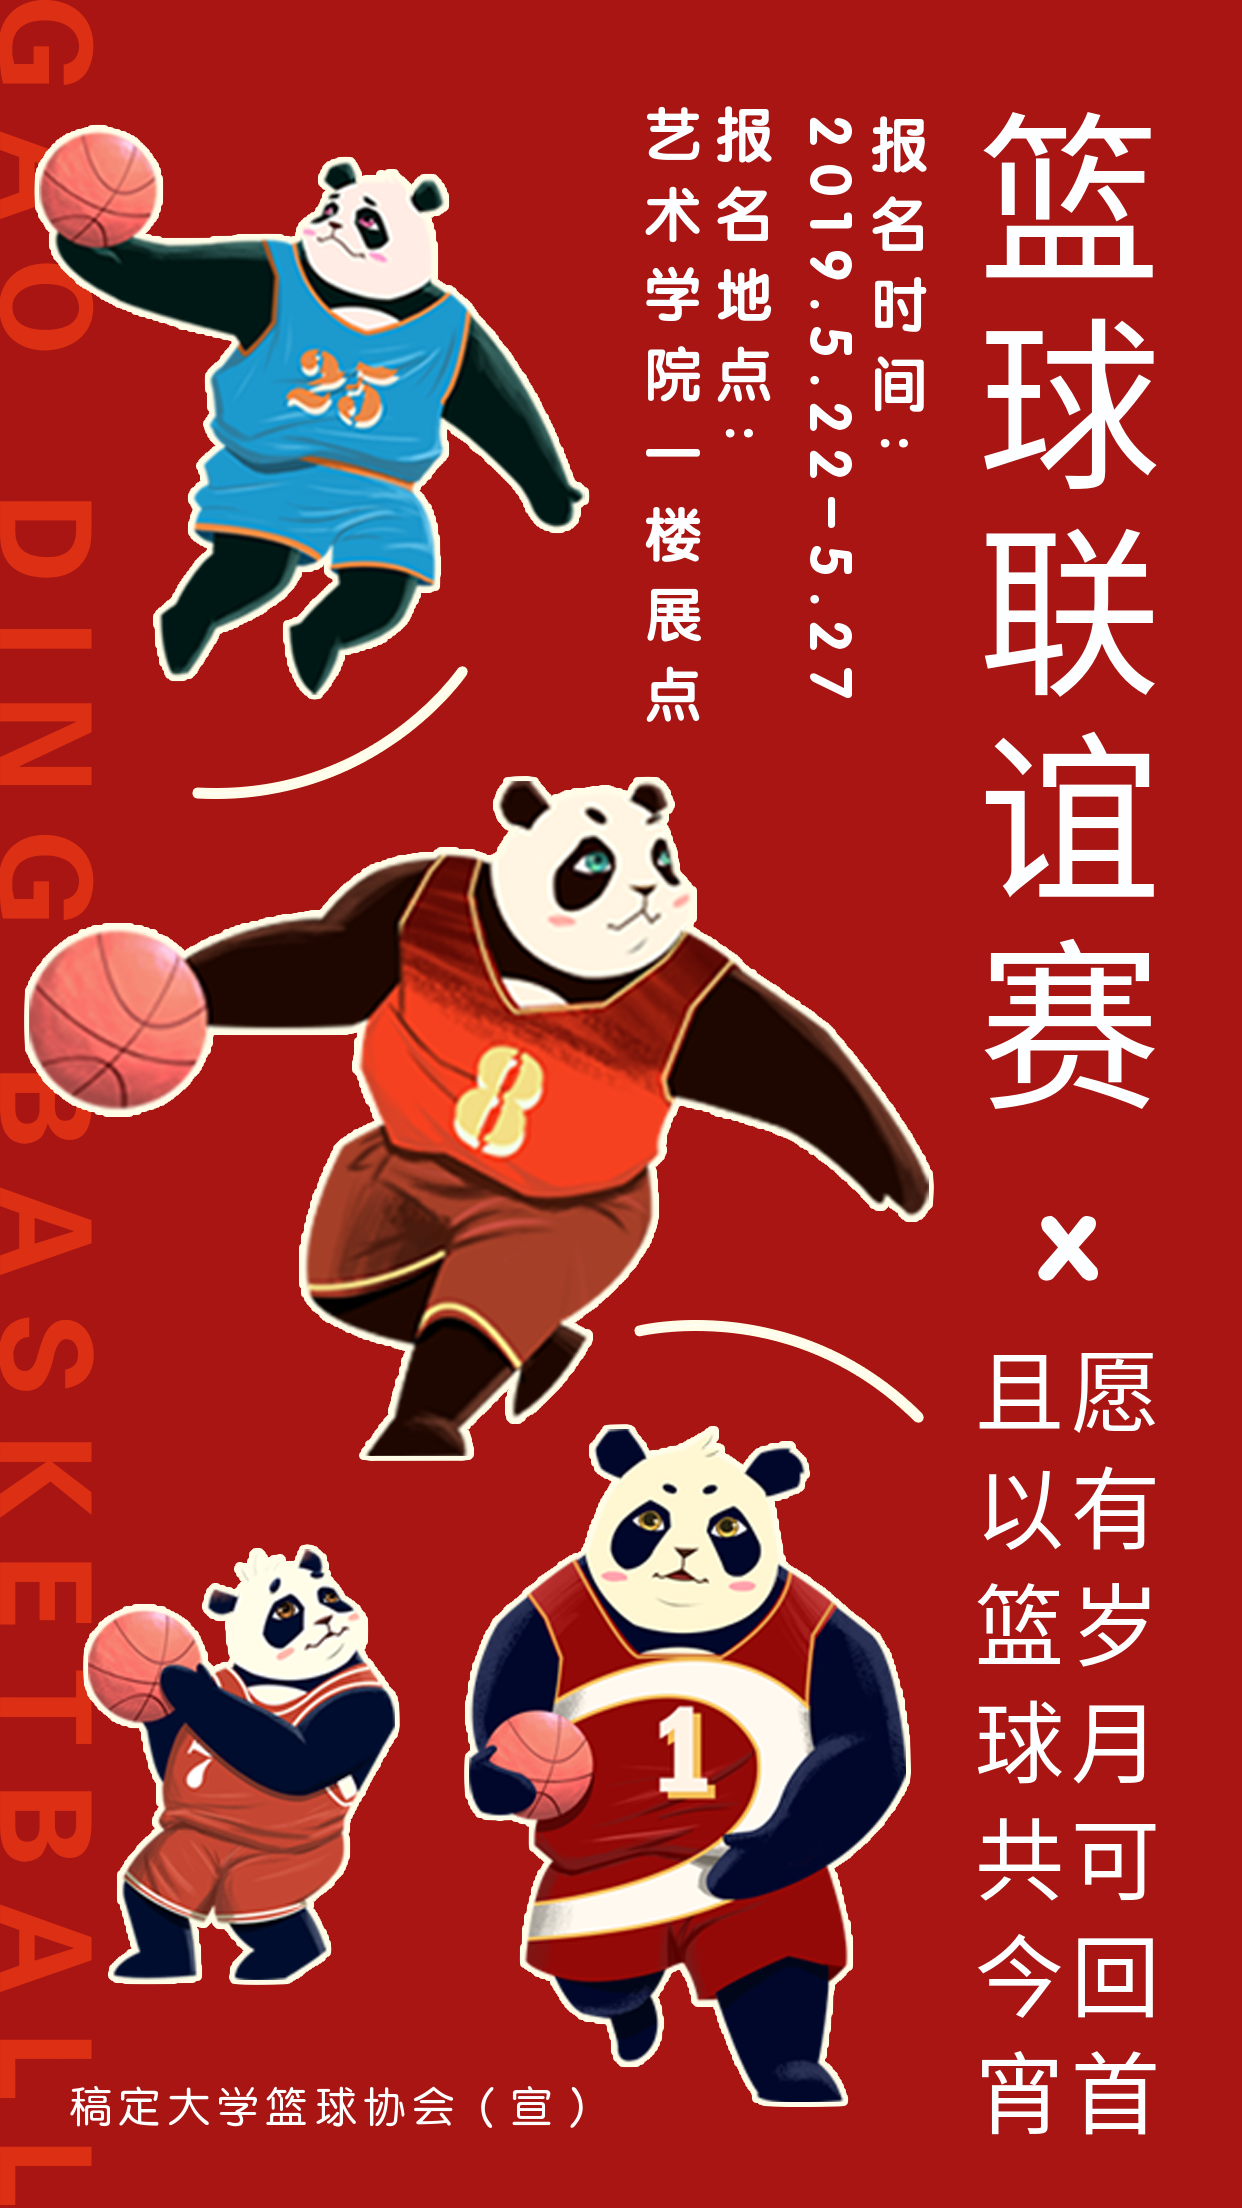 熊猫篮球联谊赛手机海报预览效果